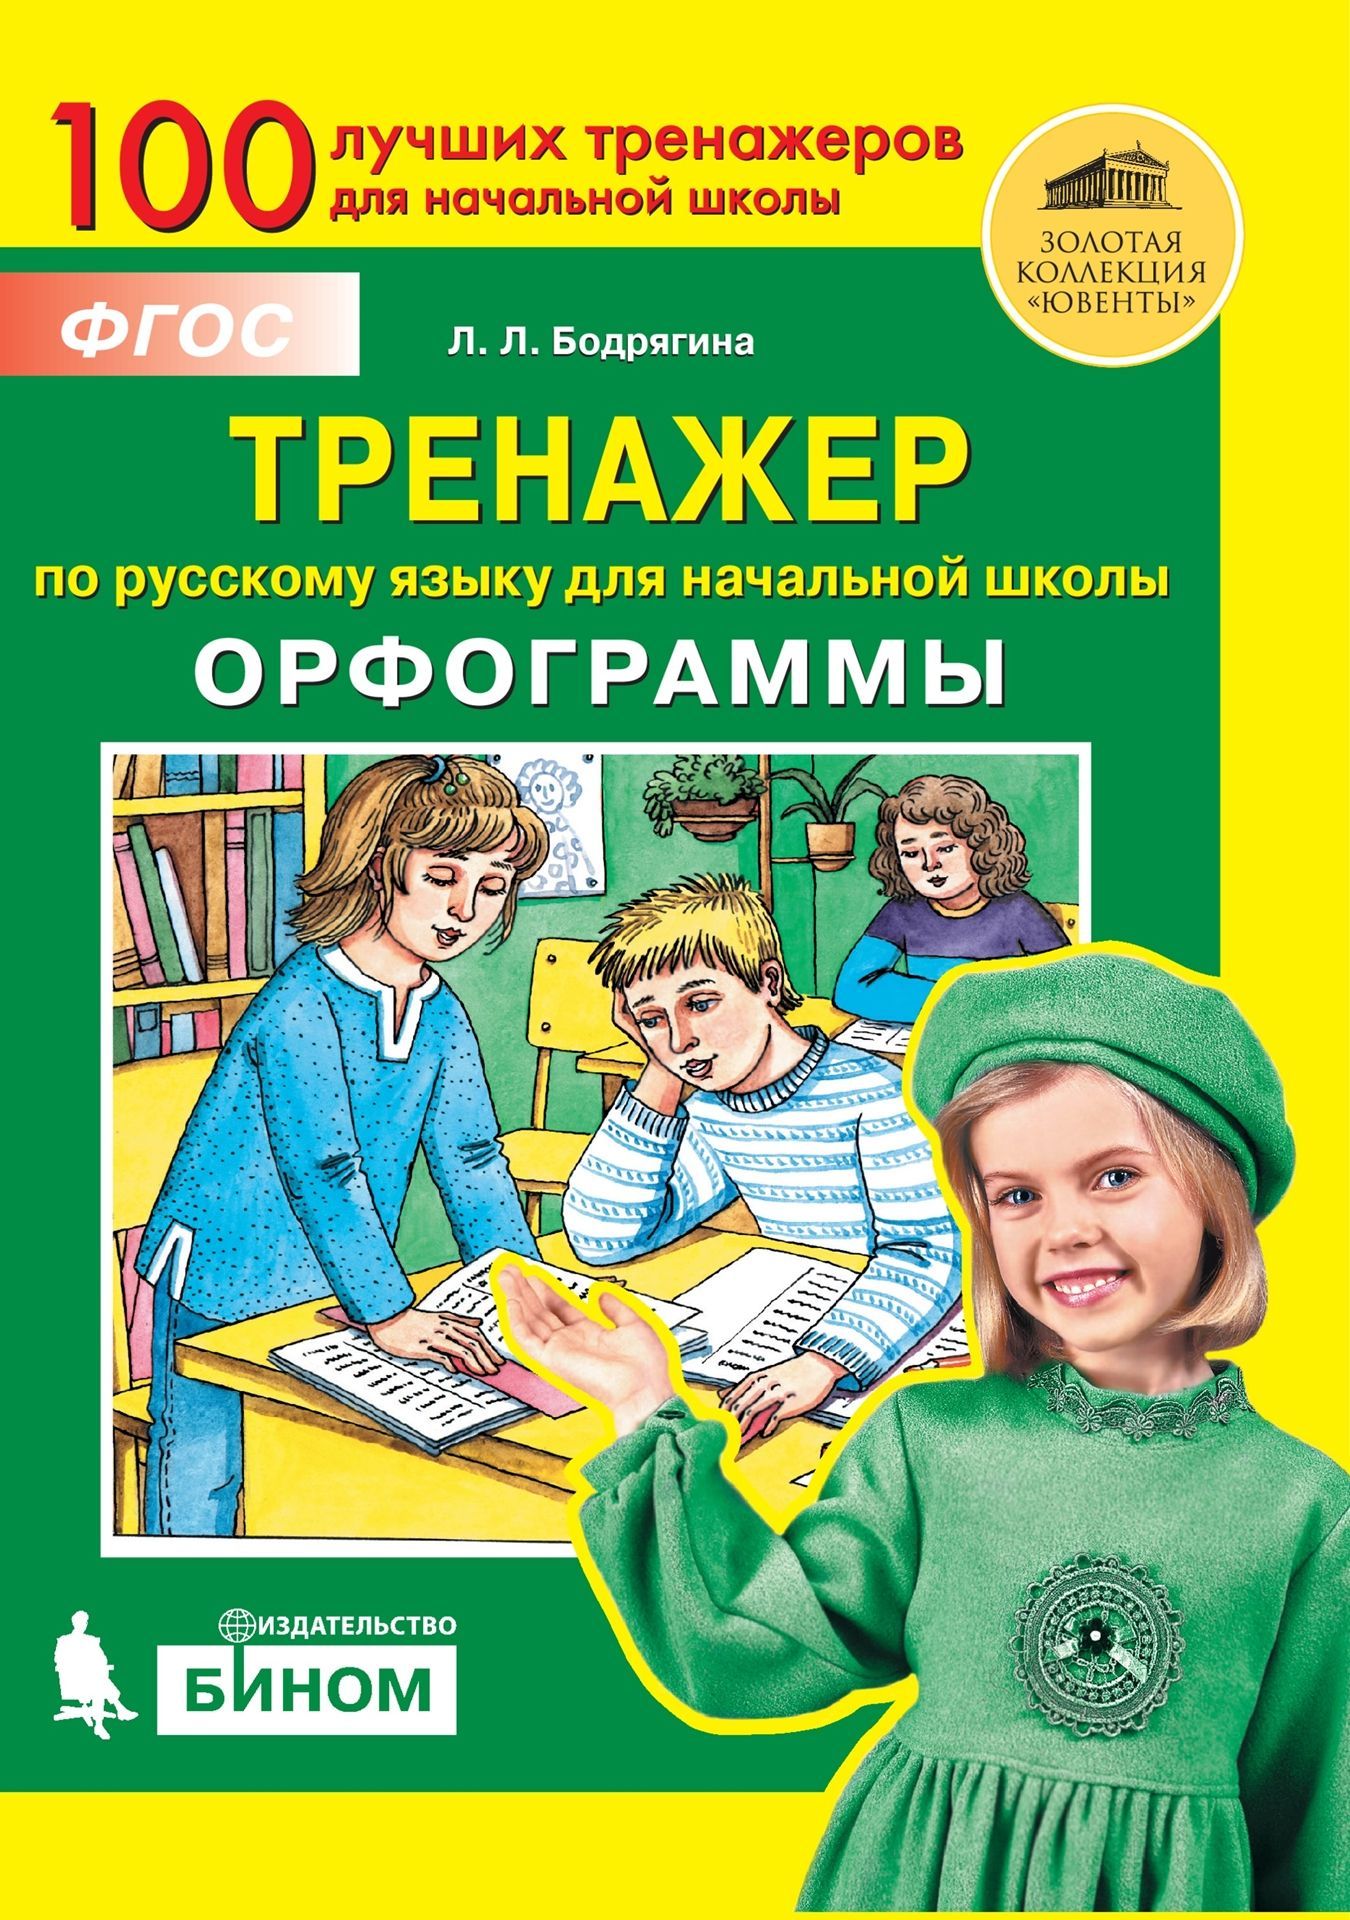 Тренажер по русскому языку для начальной школы: Орфограммы